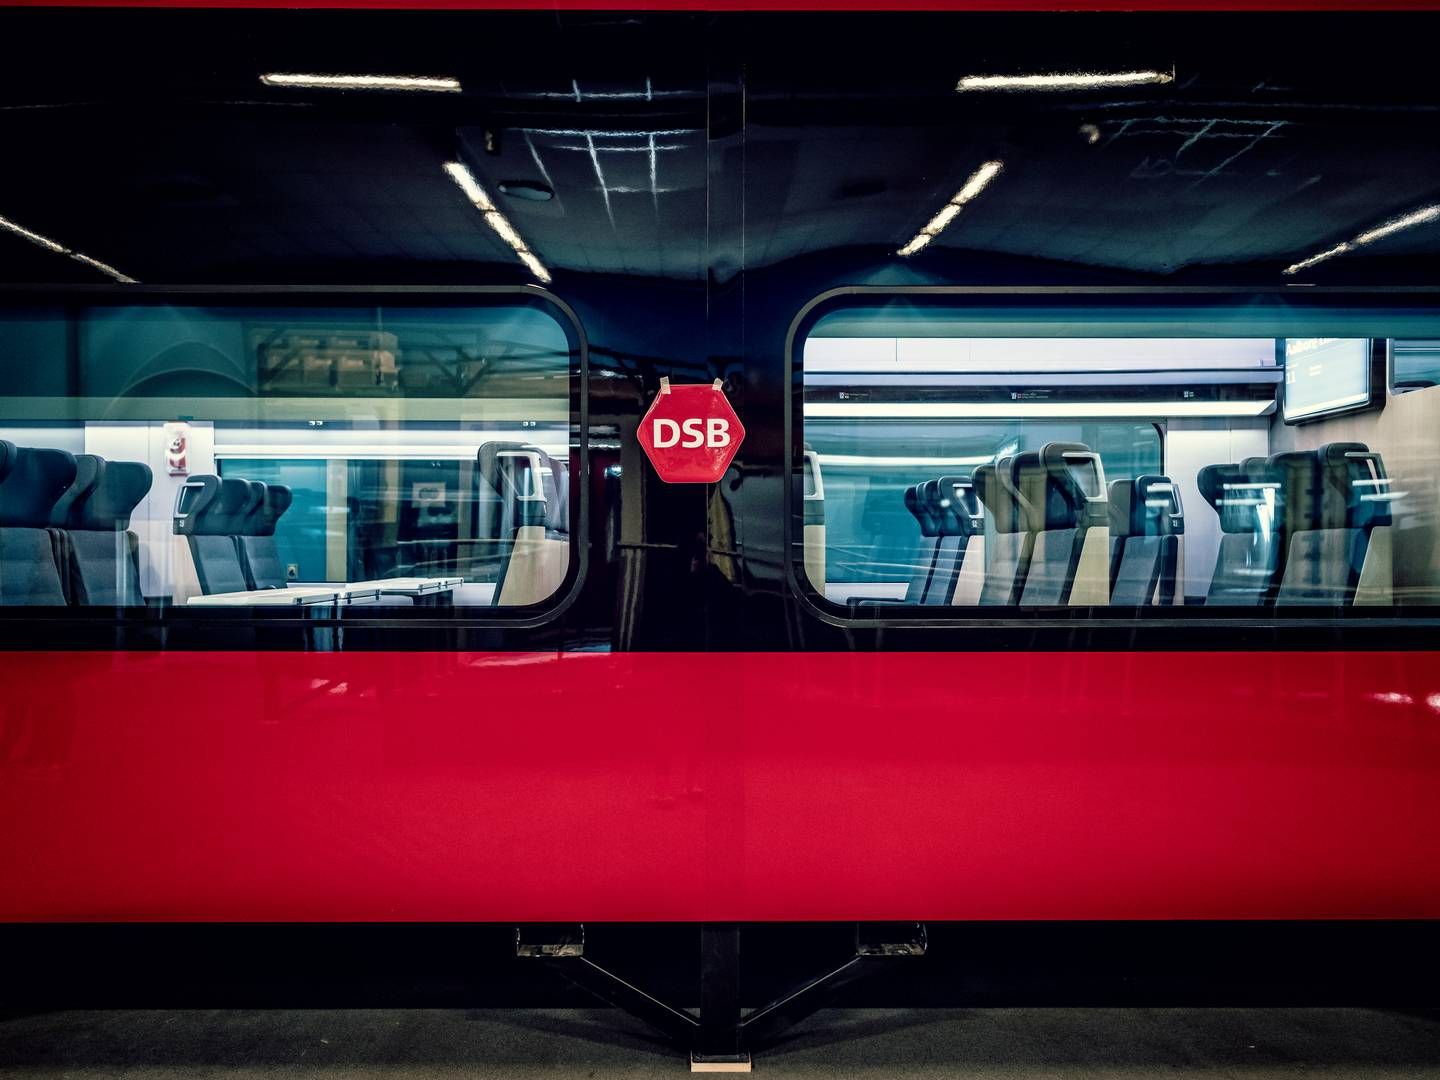 Passagere hos DSB vil i fremtiden blive talt og sporet via deres mobiltelefoner, så DSB kan se forskellige rejsemønstre. På billedet ses det nye IC5-tog. | Foto: Linda Johansen